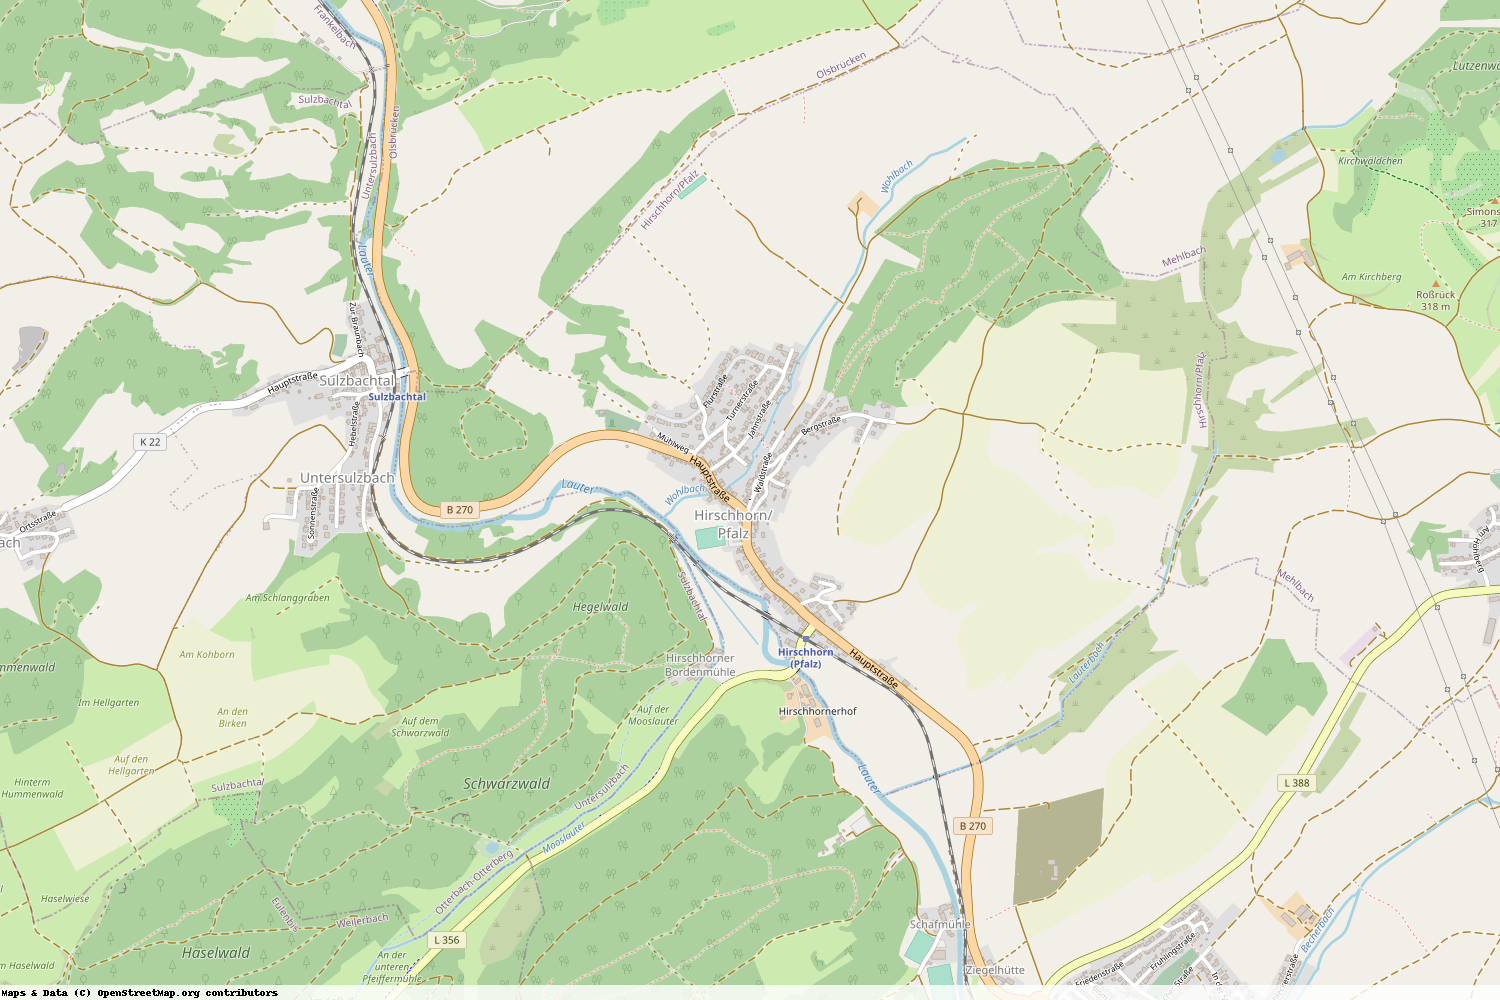 Ist gerade Stromausfall in Rheinland-Pfalz - Kaiserslautern - Hirschhorn-Pfalz?